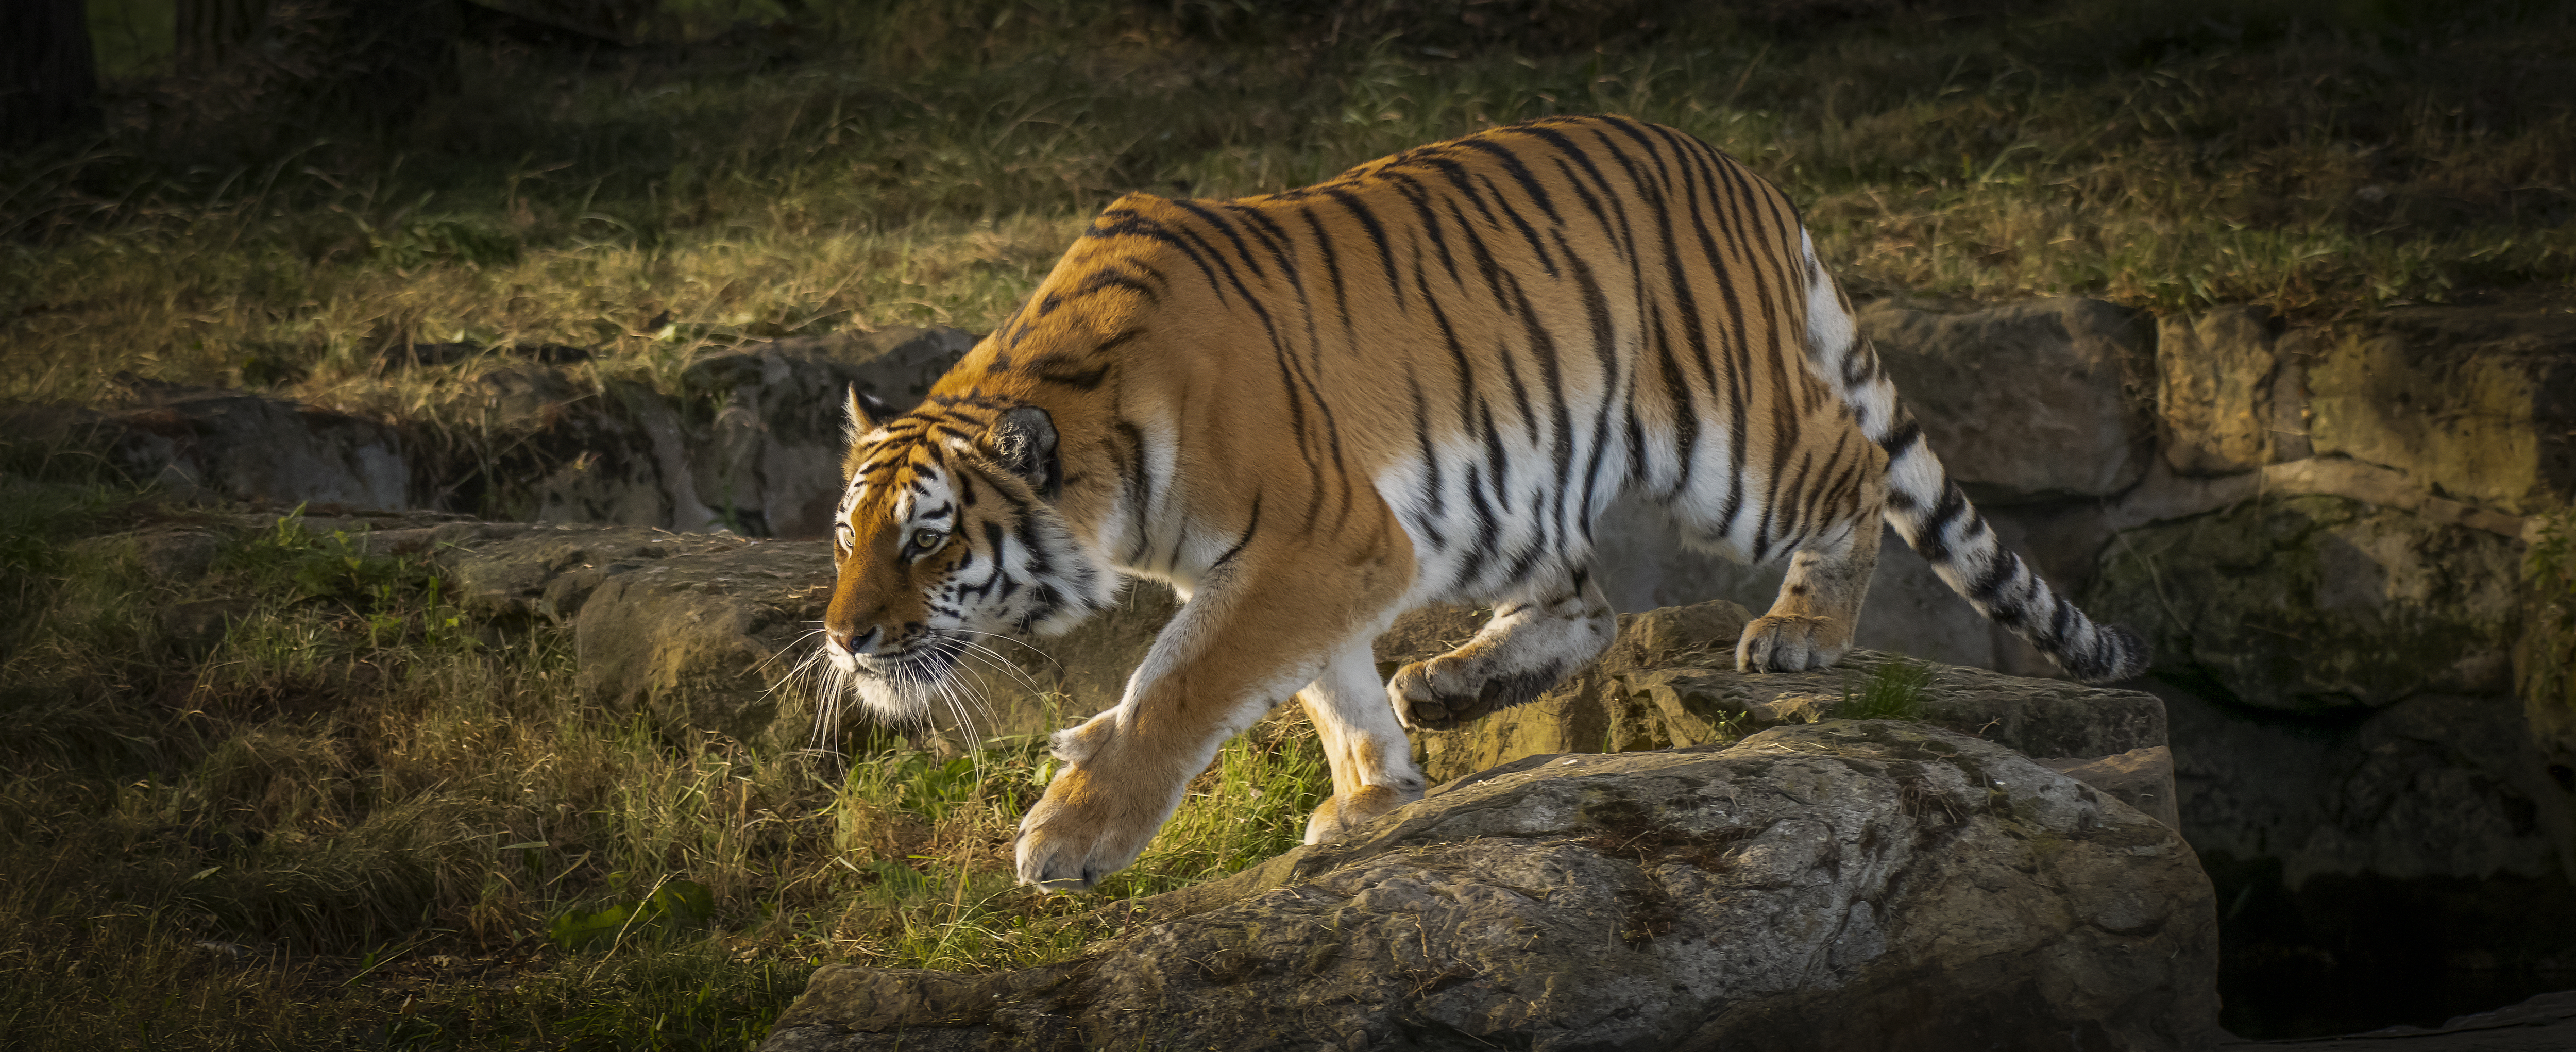 Бесплатное фото Фото амурский тигр, большая кошка больших размеров